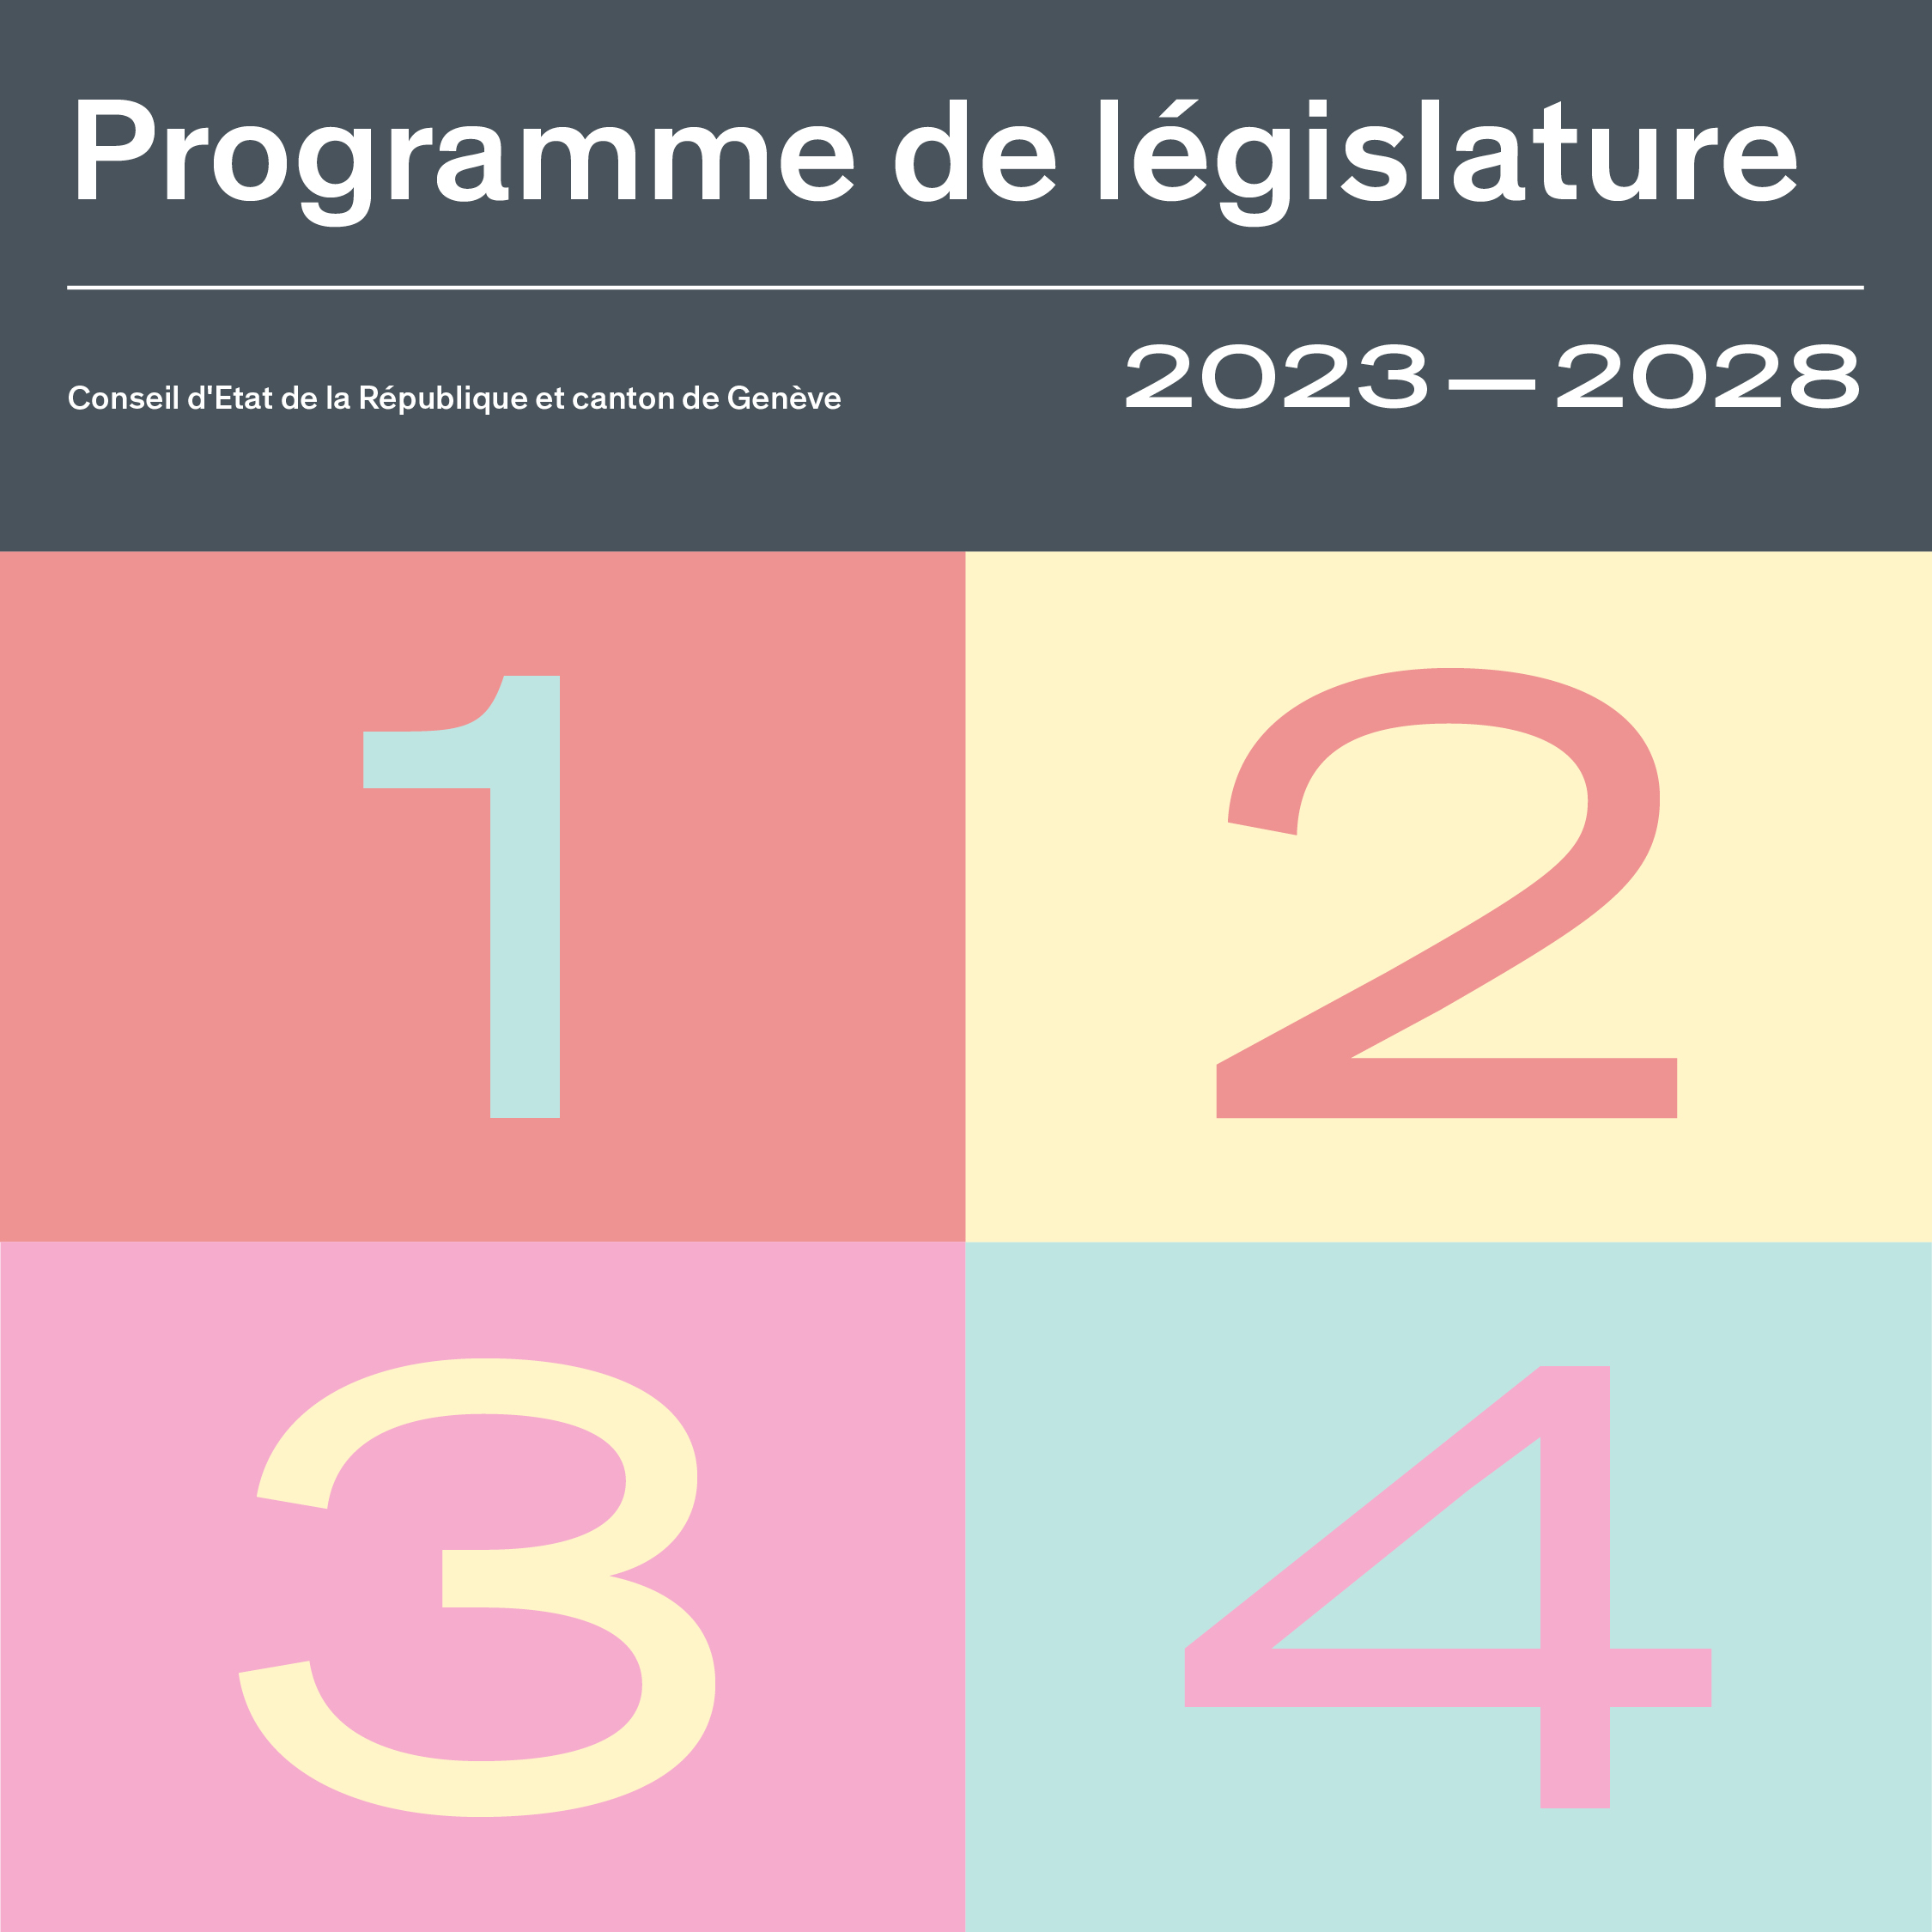 Programme de législature 2023-2028 du Conseil d’Etat